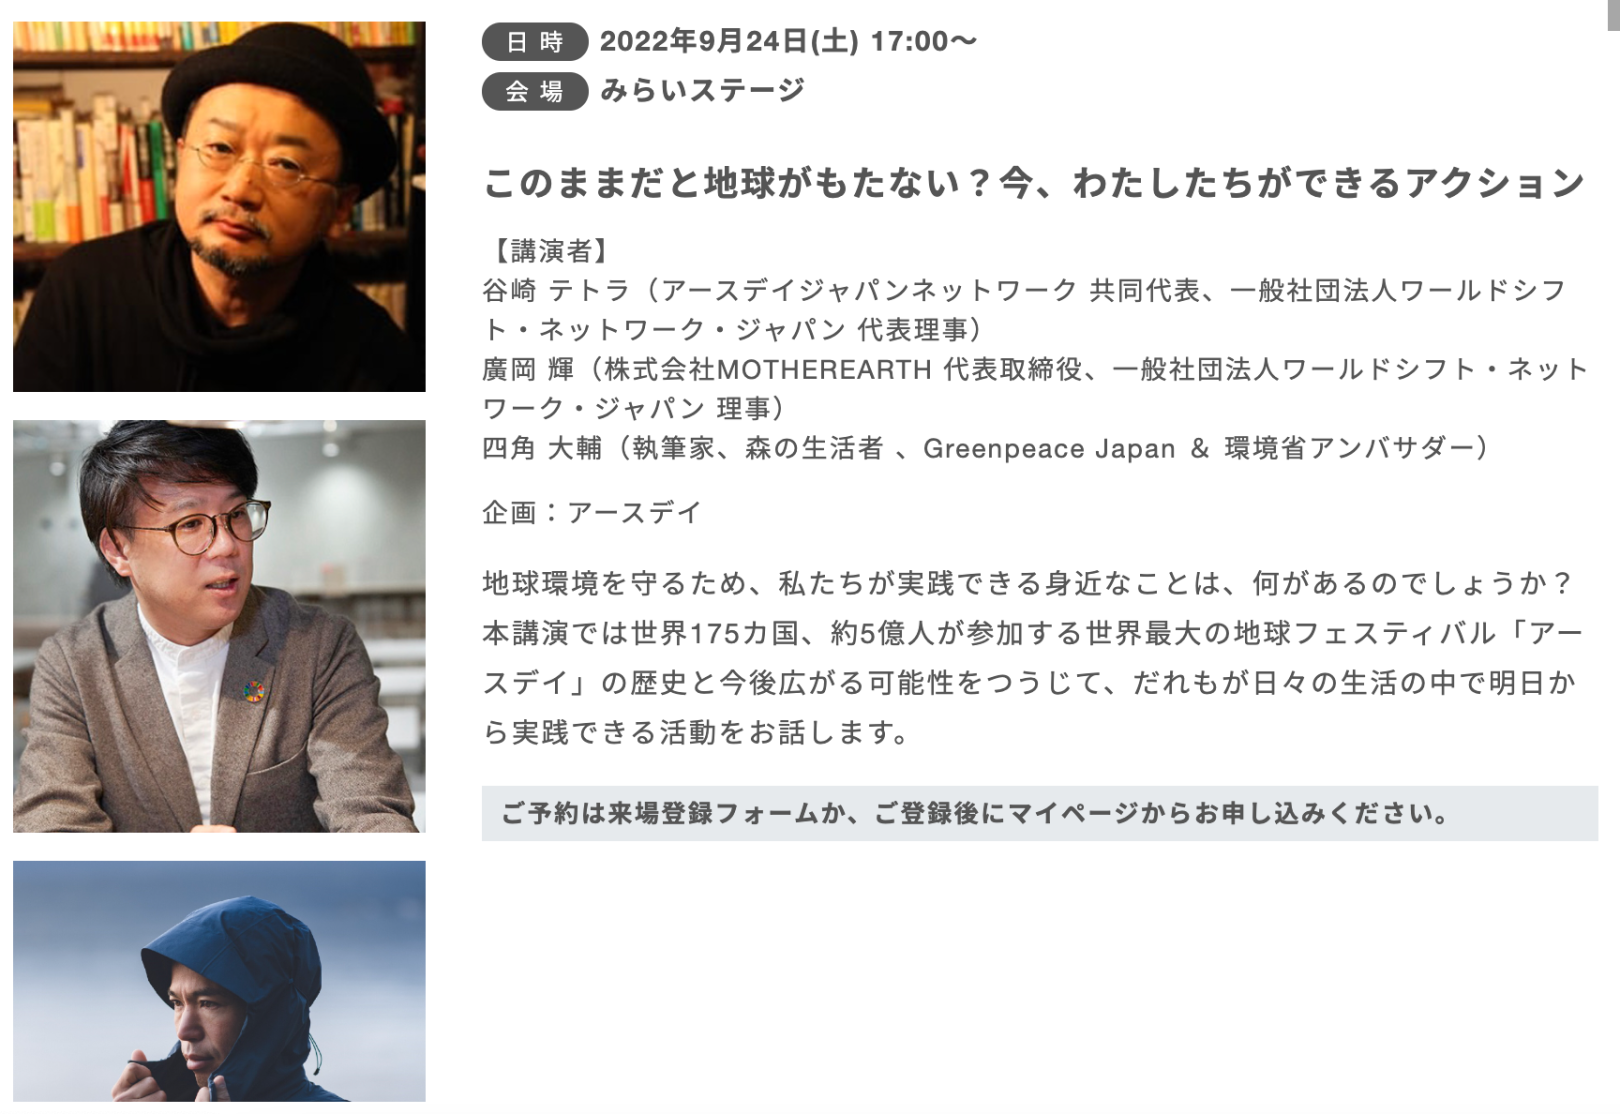 朝日新聞主催「GOOD LIFE フェア」で、谷崎 テトラさん、廣岡 輝さんと9/24(土) 17時より対談